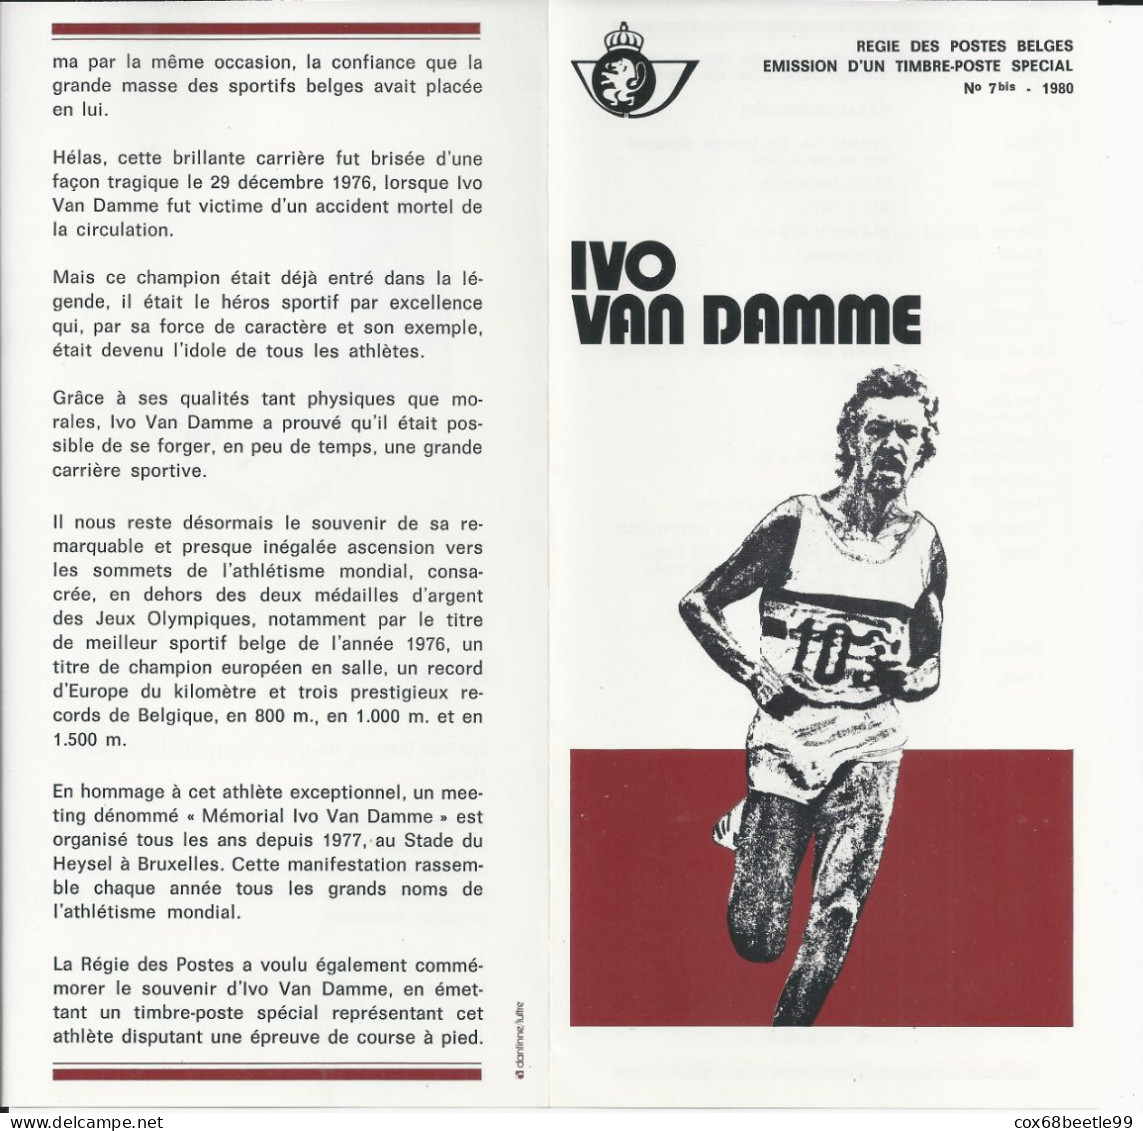 IVO VAN DAMME Belgique Feuillet De La Poste 1980 - 7 Bis FDC Cob 1974 03-05-1980 LIEGE Club Philatélique Le Perron - Volantini Postali